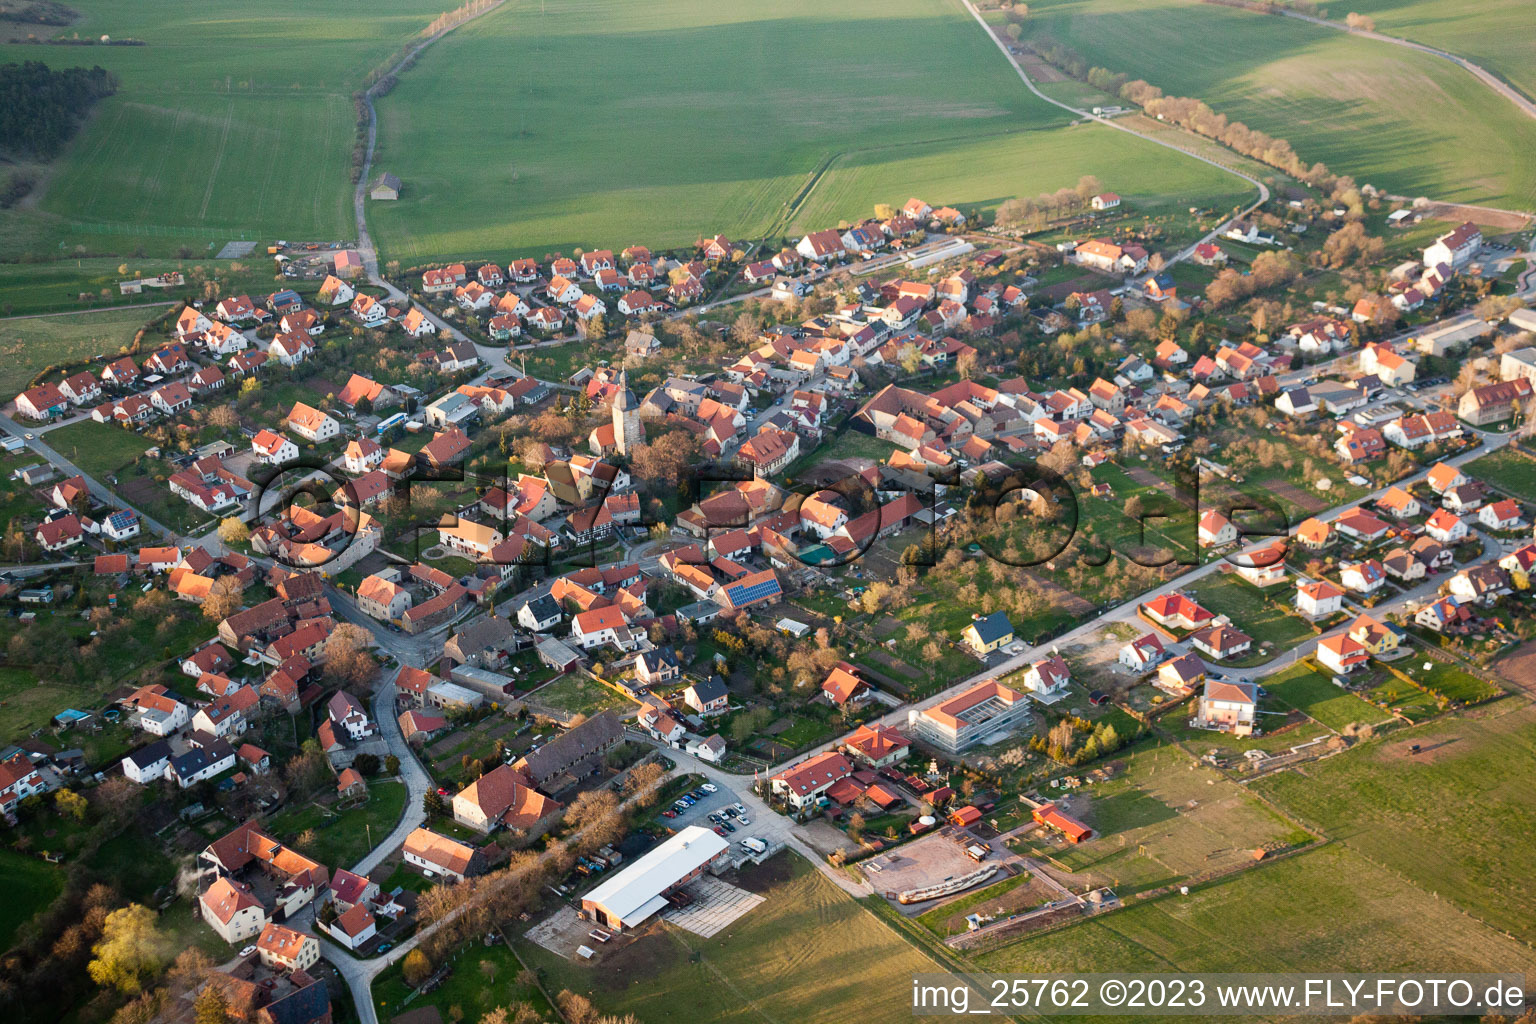 Holzhausen dans le département Thuringe, Allemagne vue d'en haut